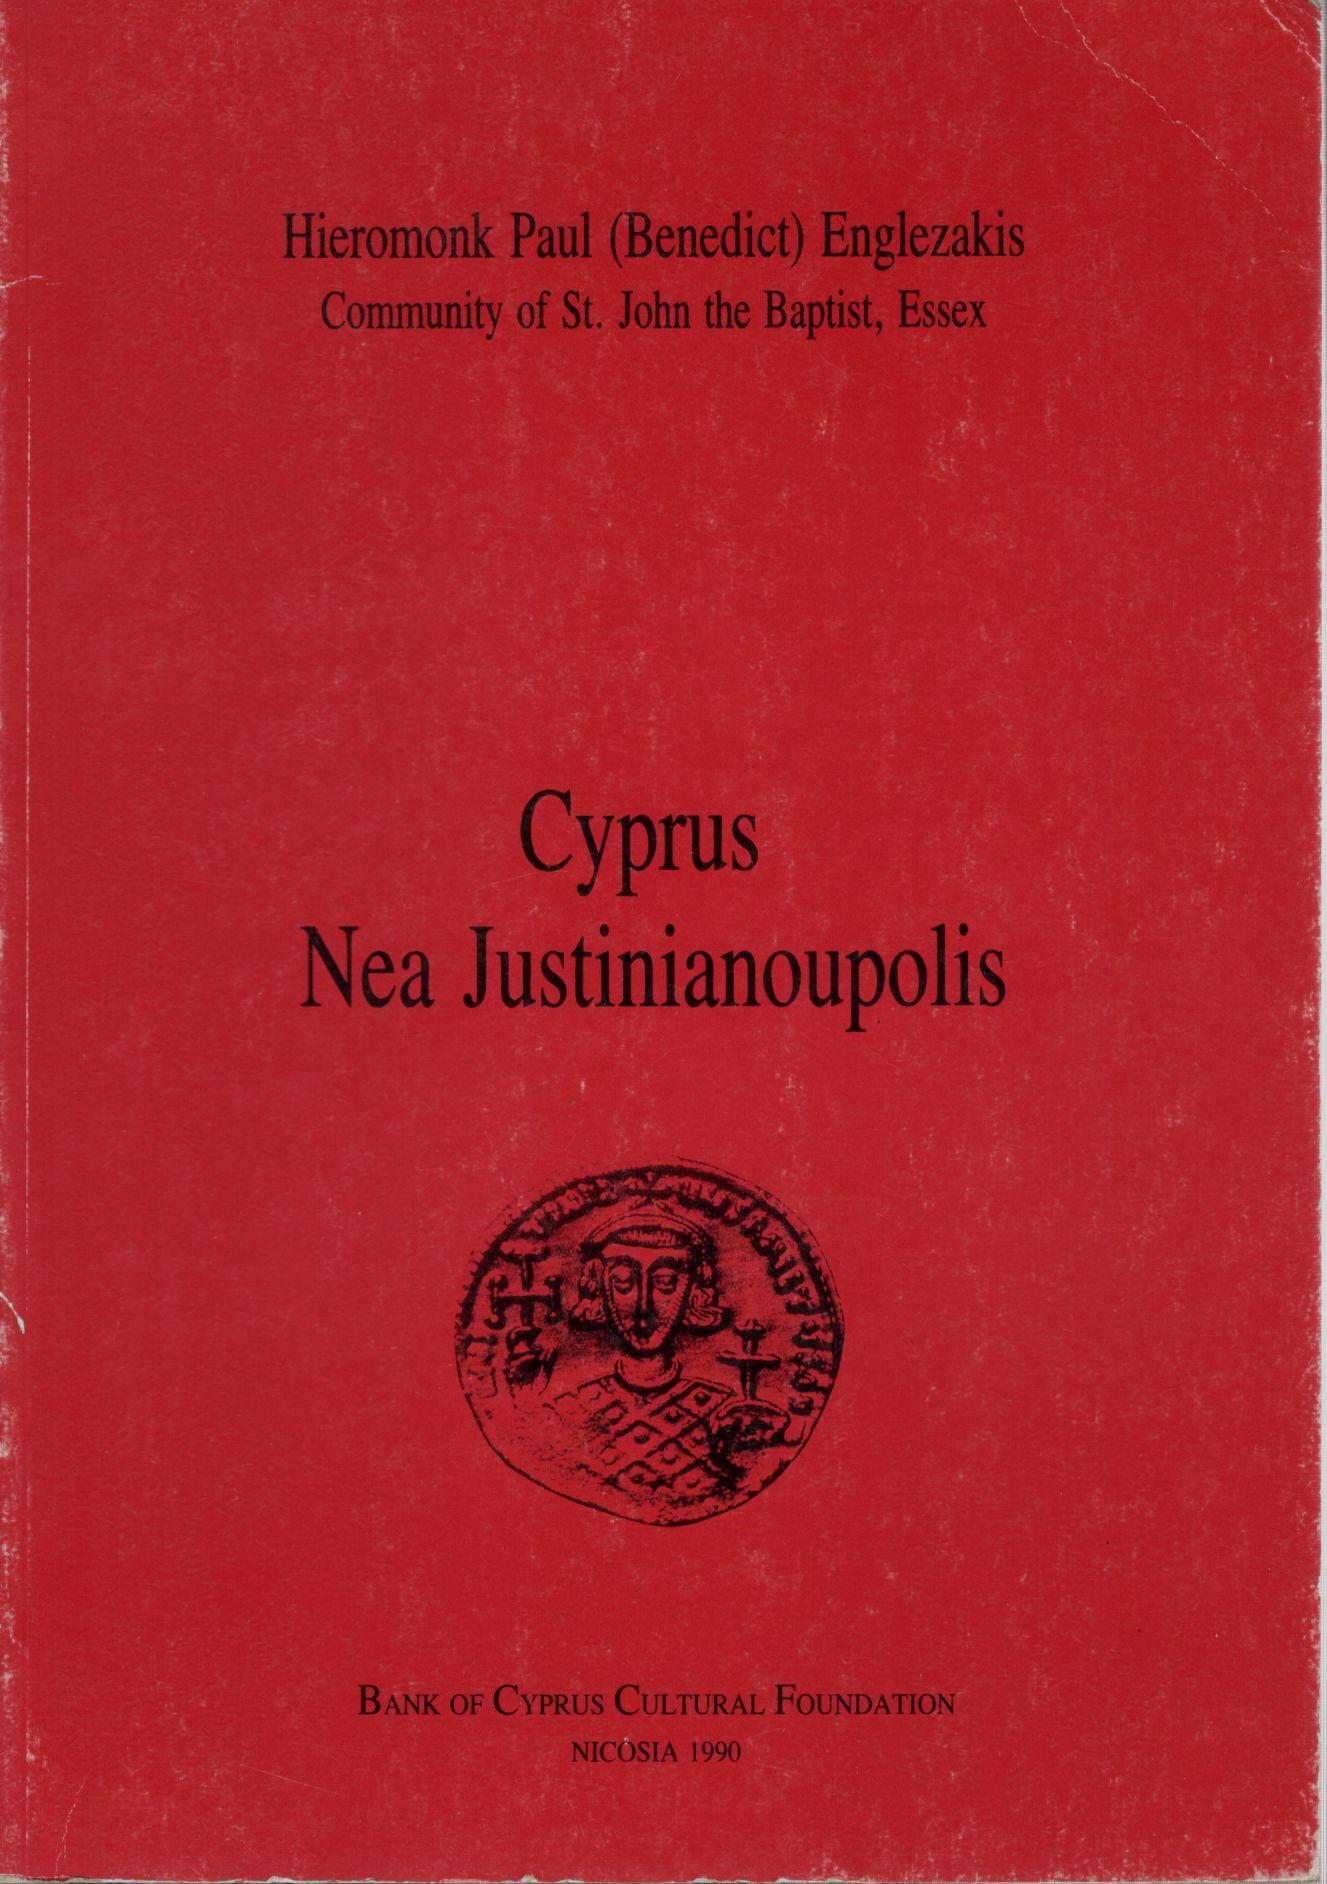 CYPRUS, NEA JUSTINIANOUPOLIS